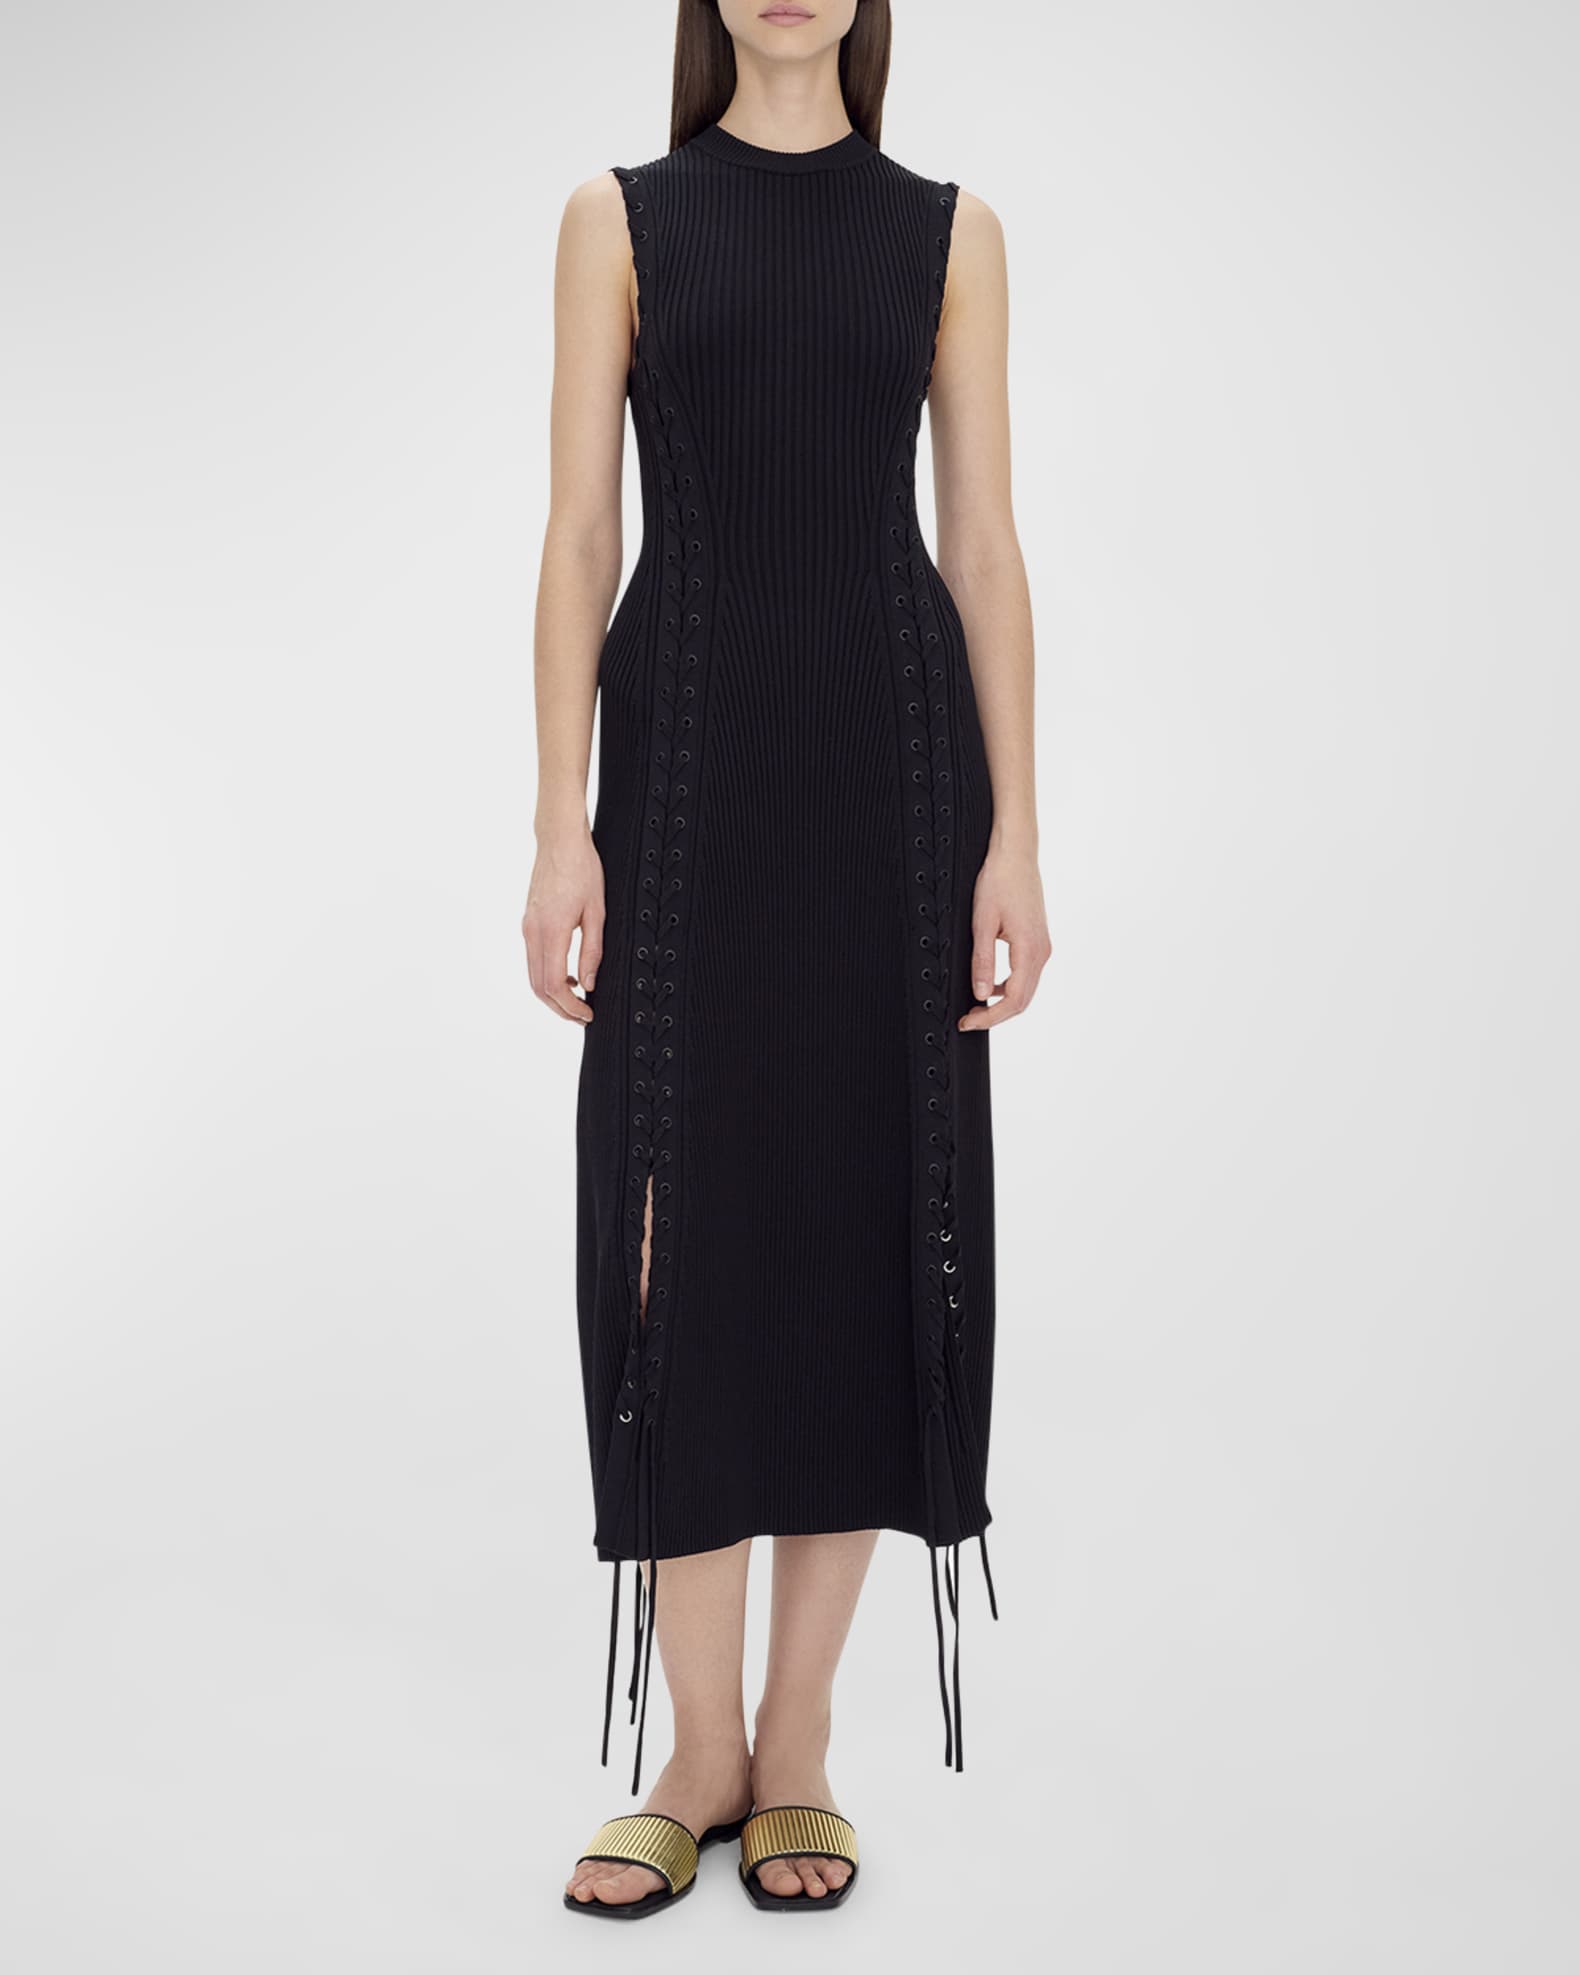 Lorena Lace-Up Knit Sleeveless Midi Dress